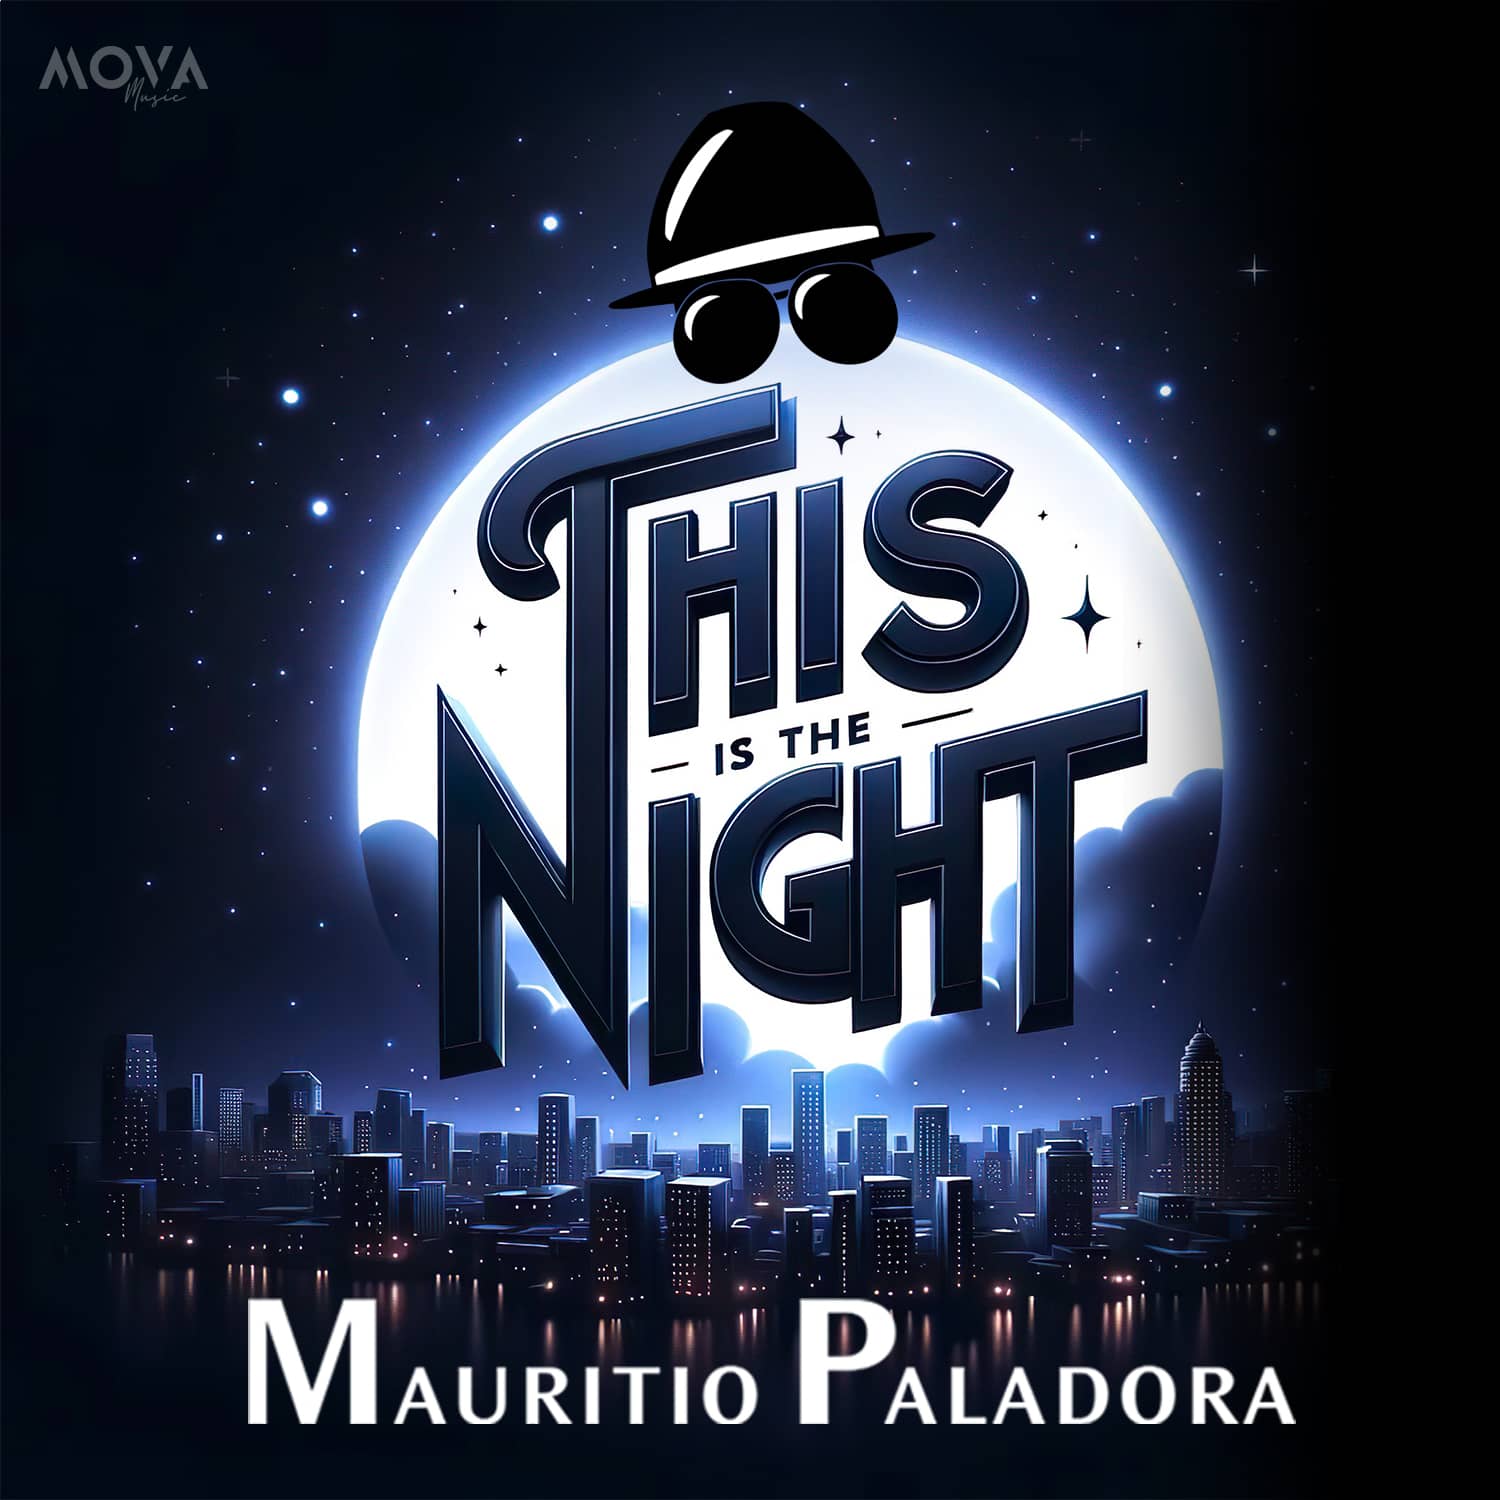 „This is the Night“: Mauritio Paladora entfesselt ein Funk-Rock-Feuerwerk